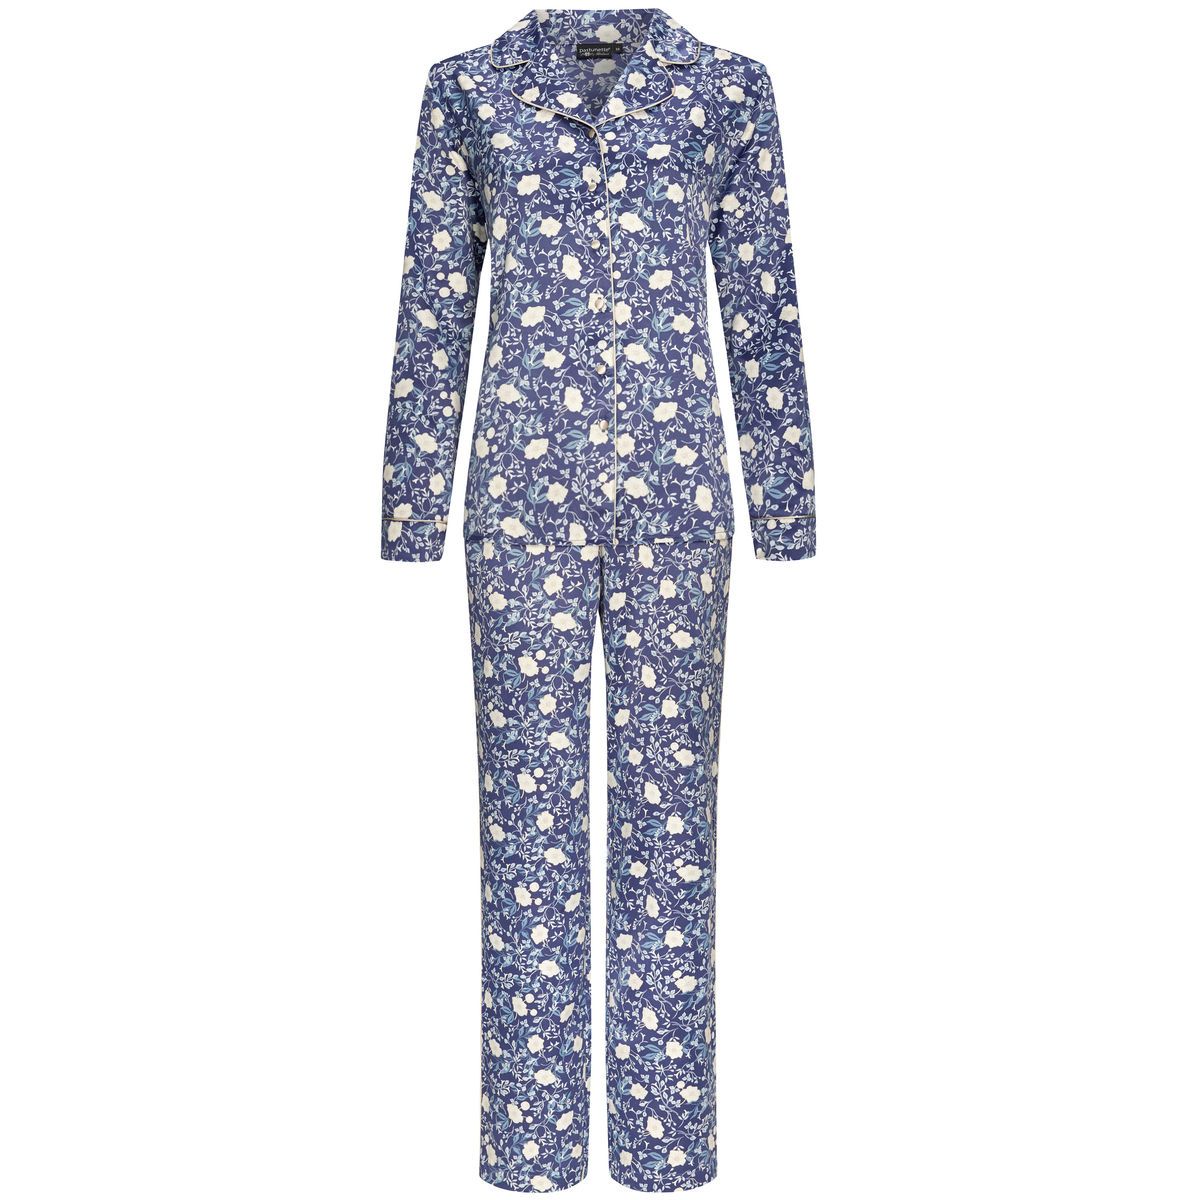 Pastunette de luxe Satijnen Pyjama doorknoop - 25232-304-6 - donkerblauw